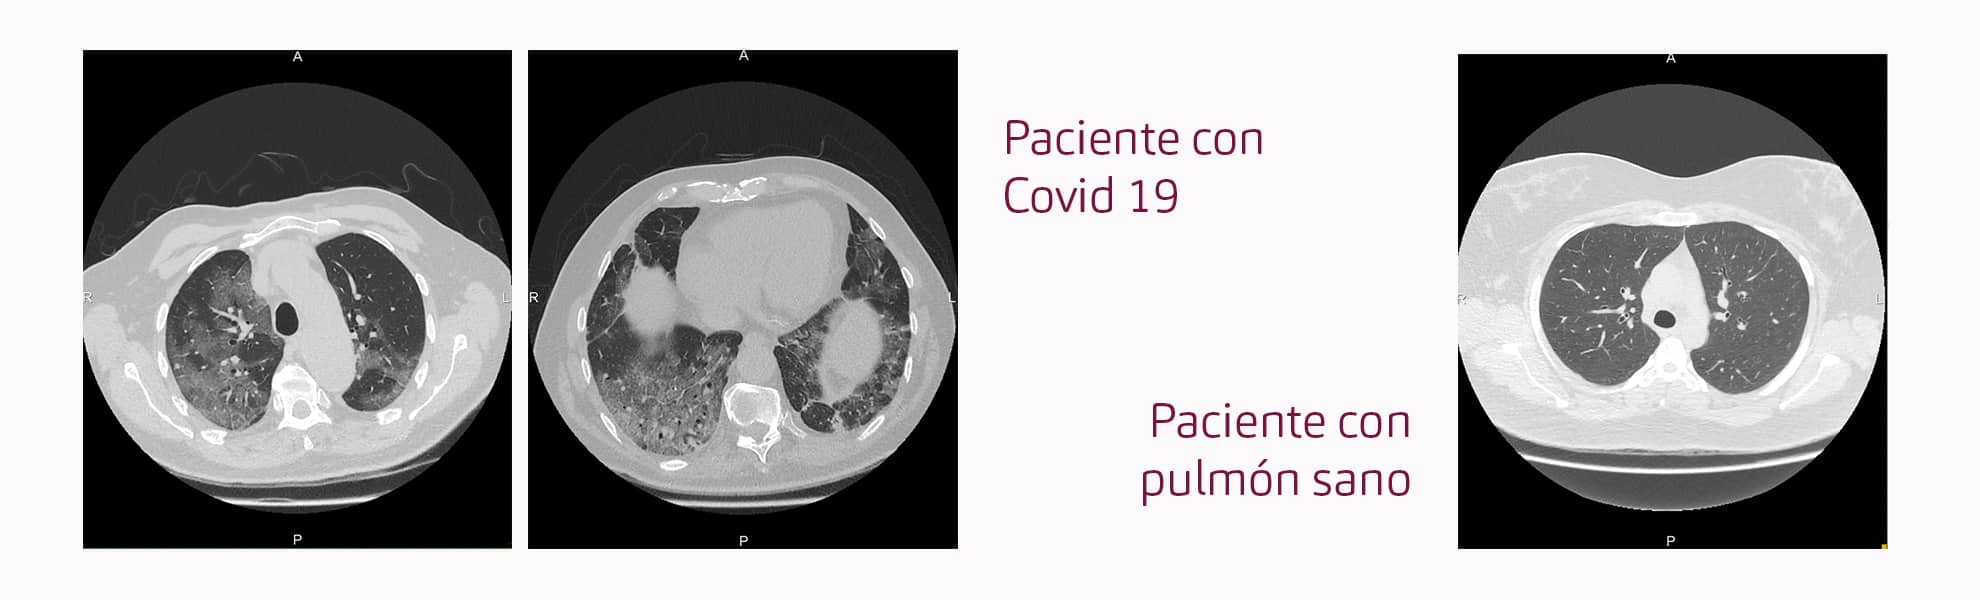 el-tac-pulmonar-se-empieza-a-utilizar-en-creu-blanca-para-detectar-la-afectacion-pulmonar-causada-por-el-covid-19-id-125